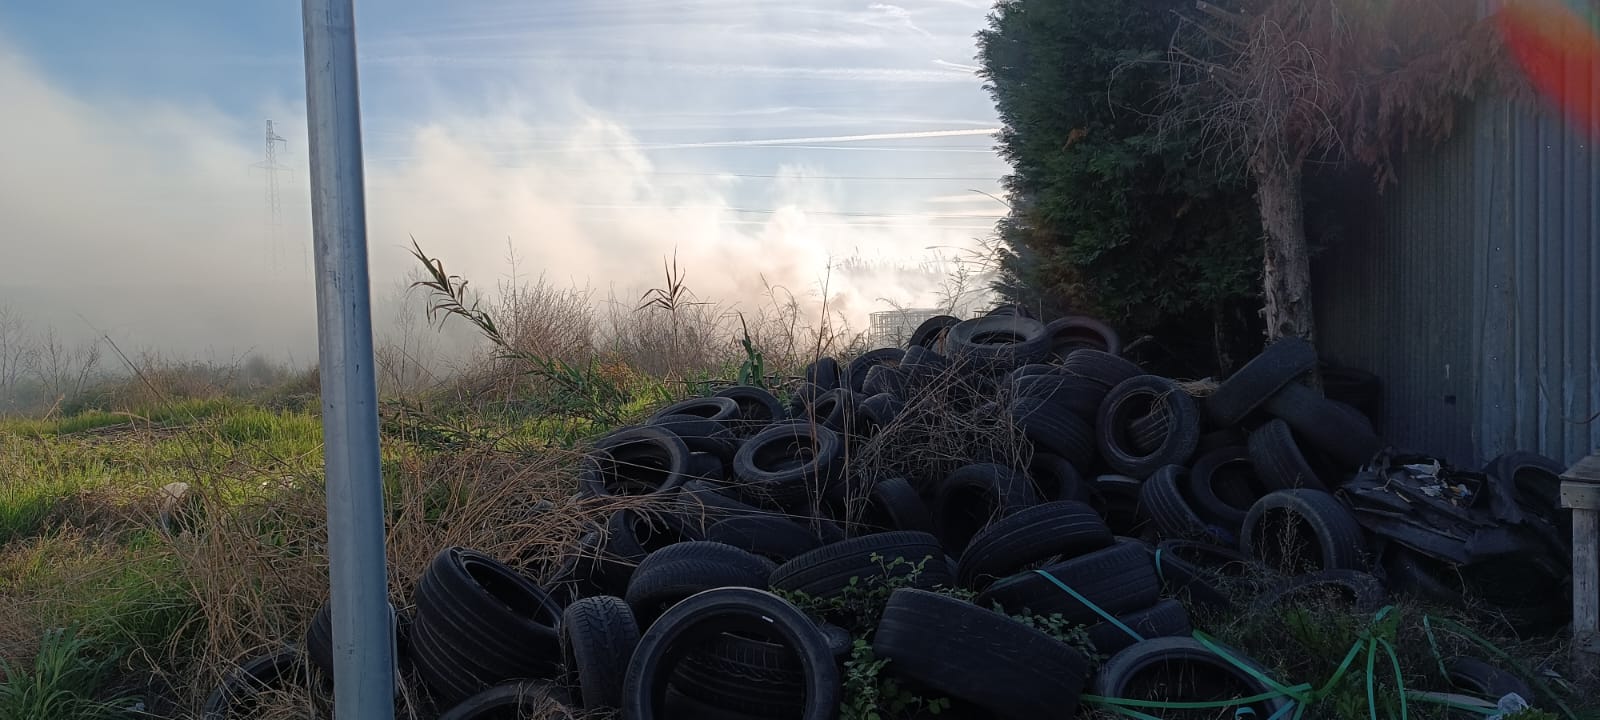 FOTO/ Flakët dhe tymi i zi “pushtojnë” autostradën në Lushnje, forcat zjarrfikëse ndërhyjnë për shuarjen e zjarrit